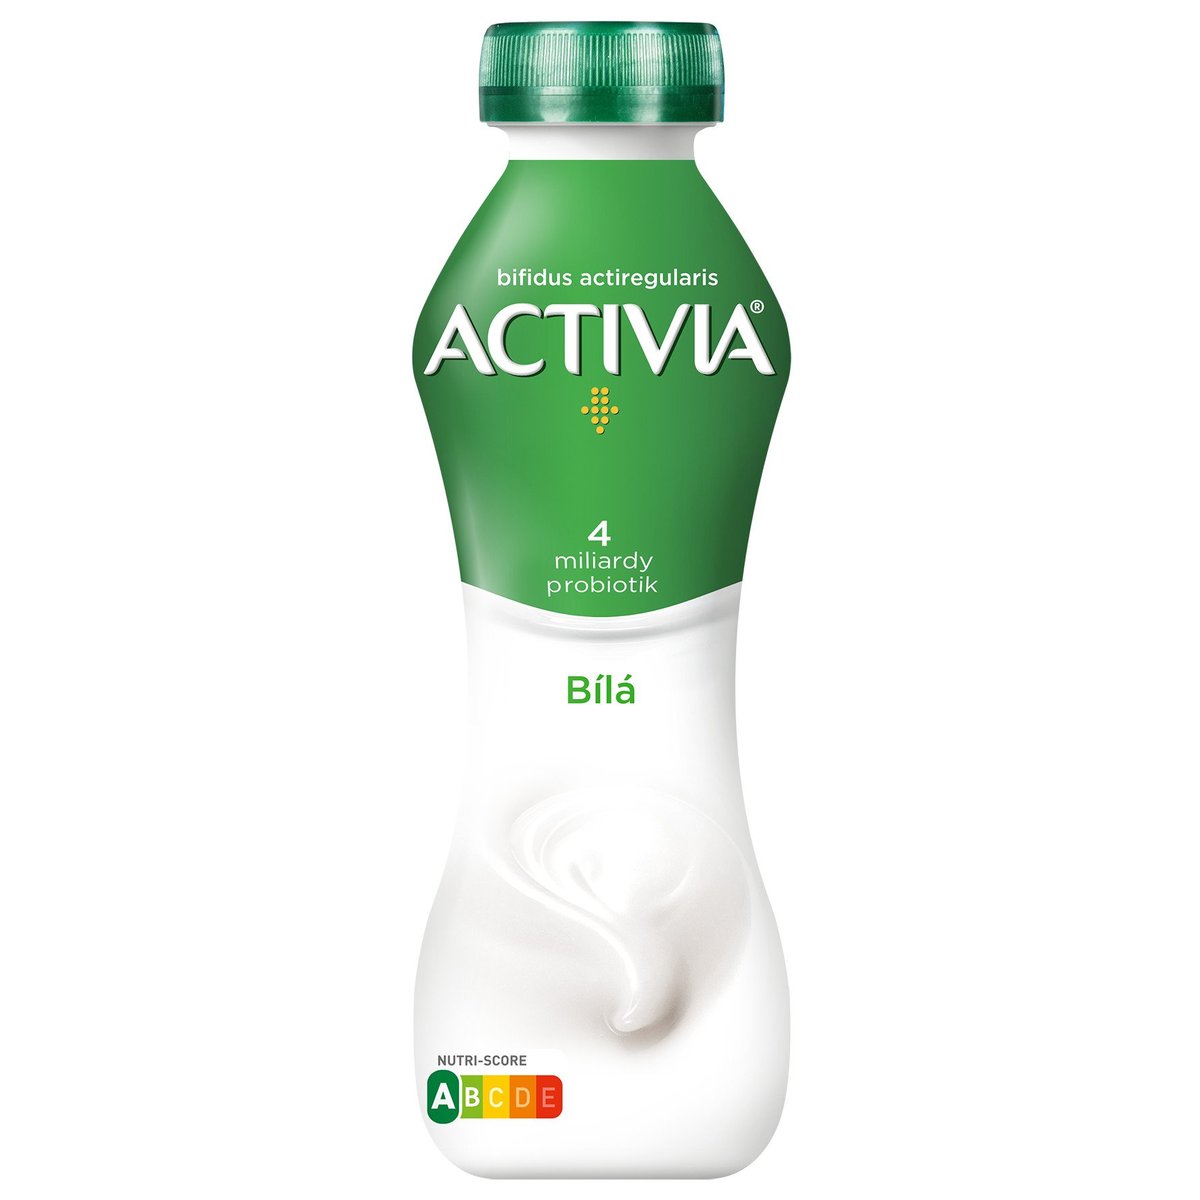 Activia probiotický jogurtový nápoj bílý v akci